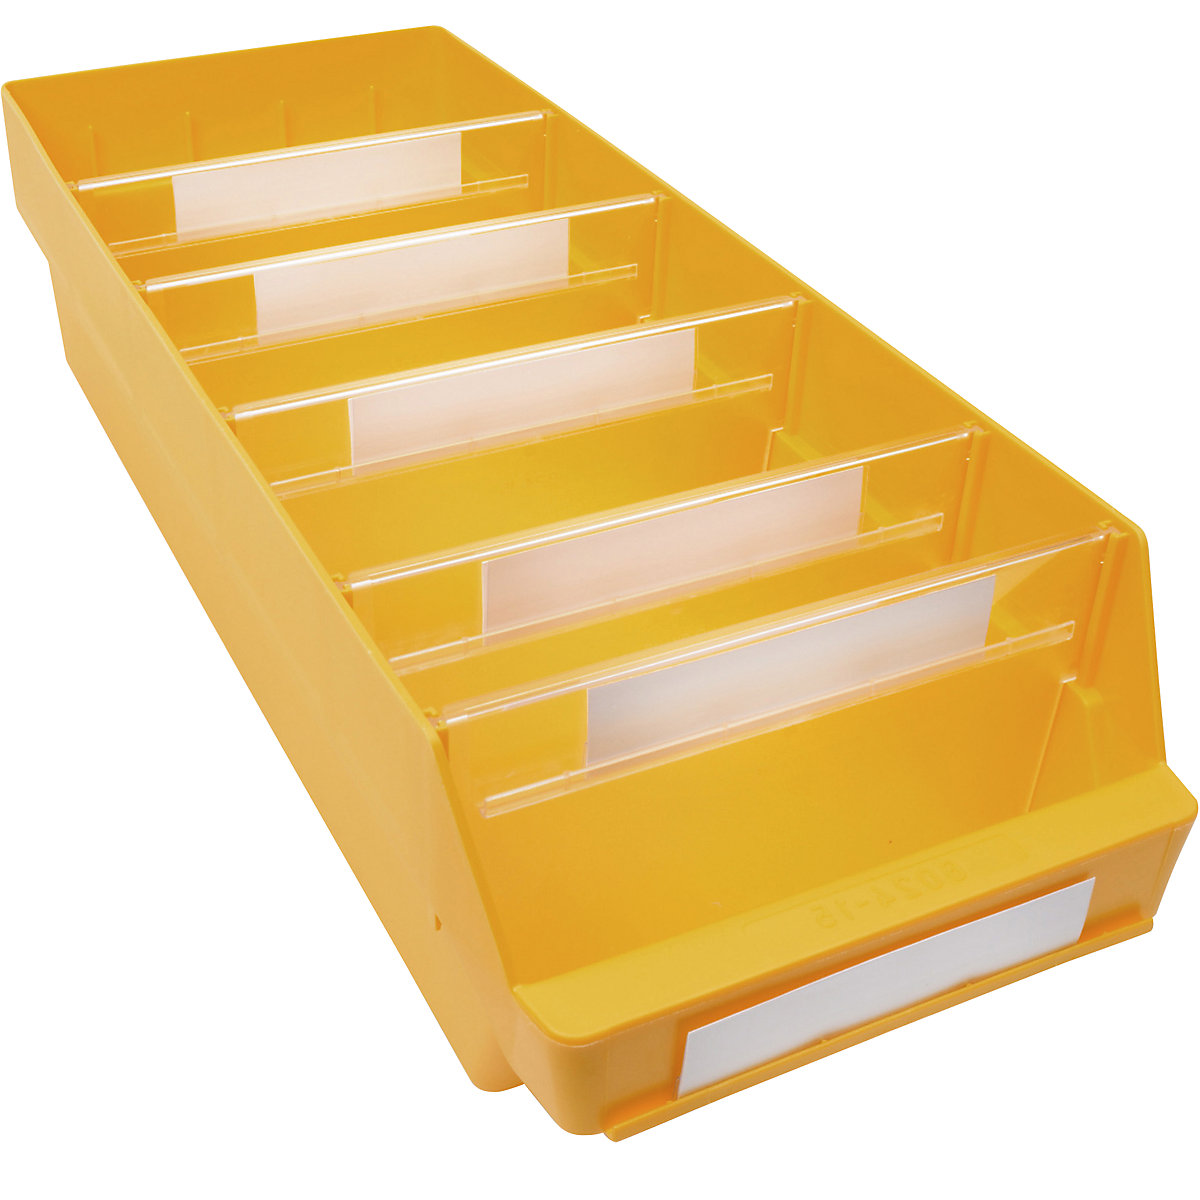 Cassettina per scaffali in polipropilene ad alta resistenza – STEMO, giallo, lungh. x largh. x alt. 600 x 240 x 150 mm, conf. da 10 pezzi-11